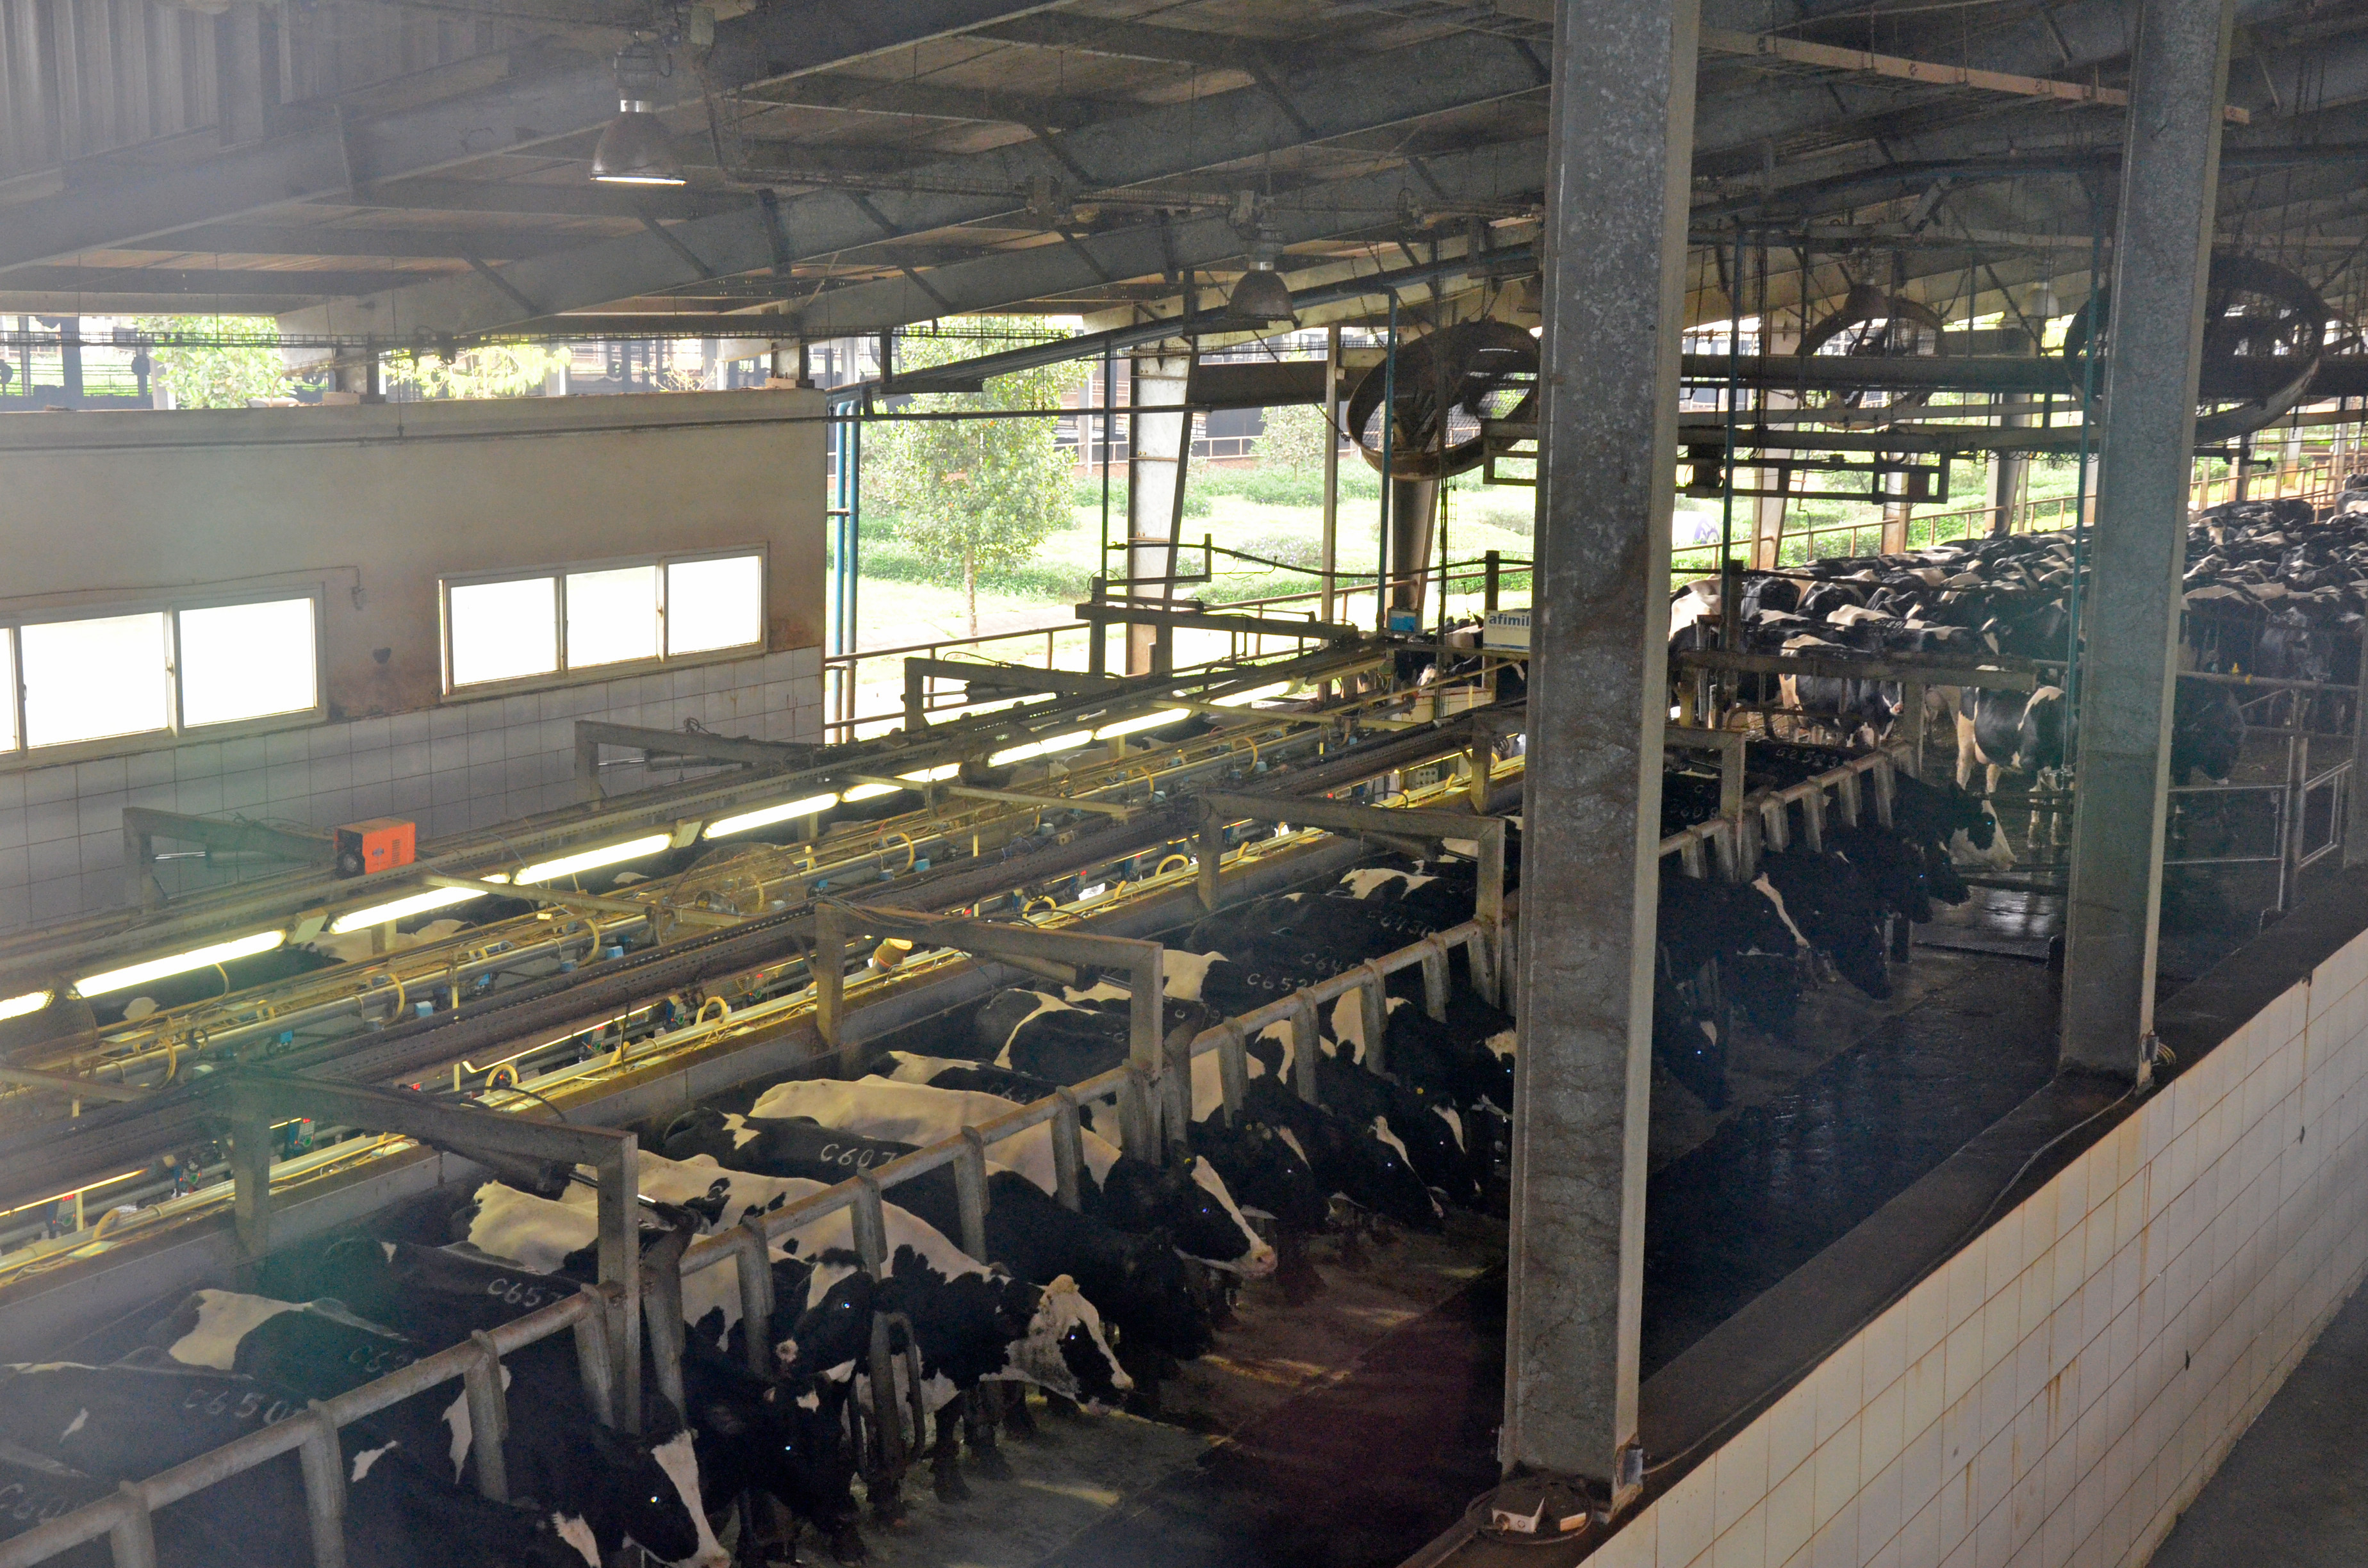 Trang trại chăn nuôi bò sữa của Tập đoàn TH. Ảnh Thanh Lê